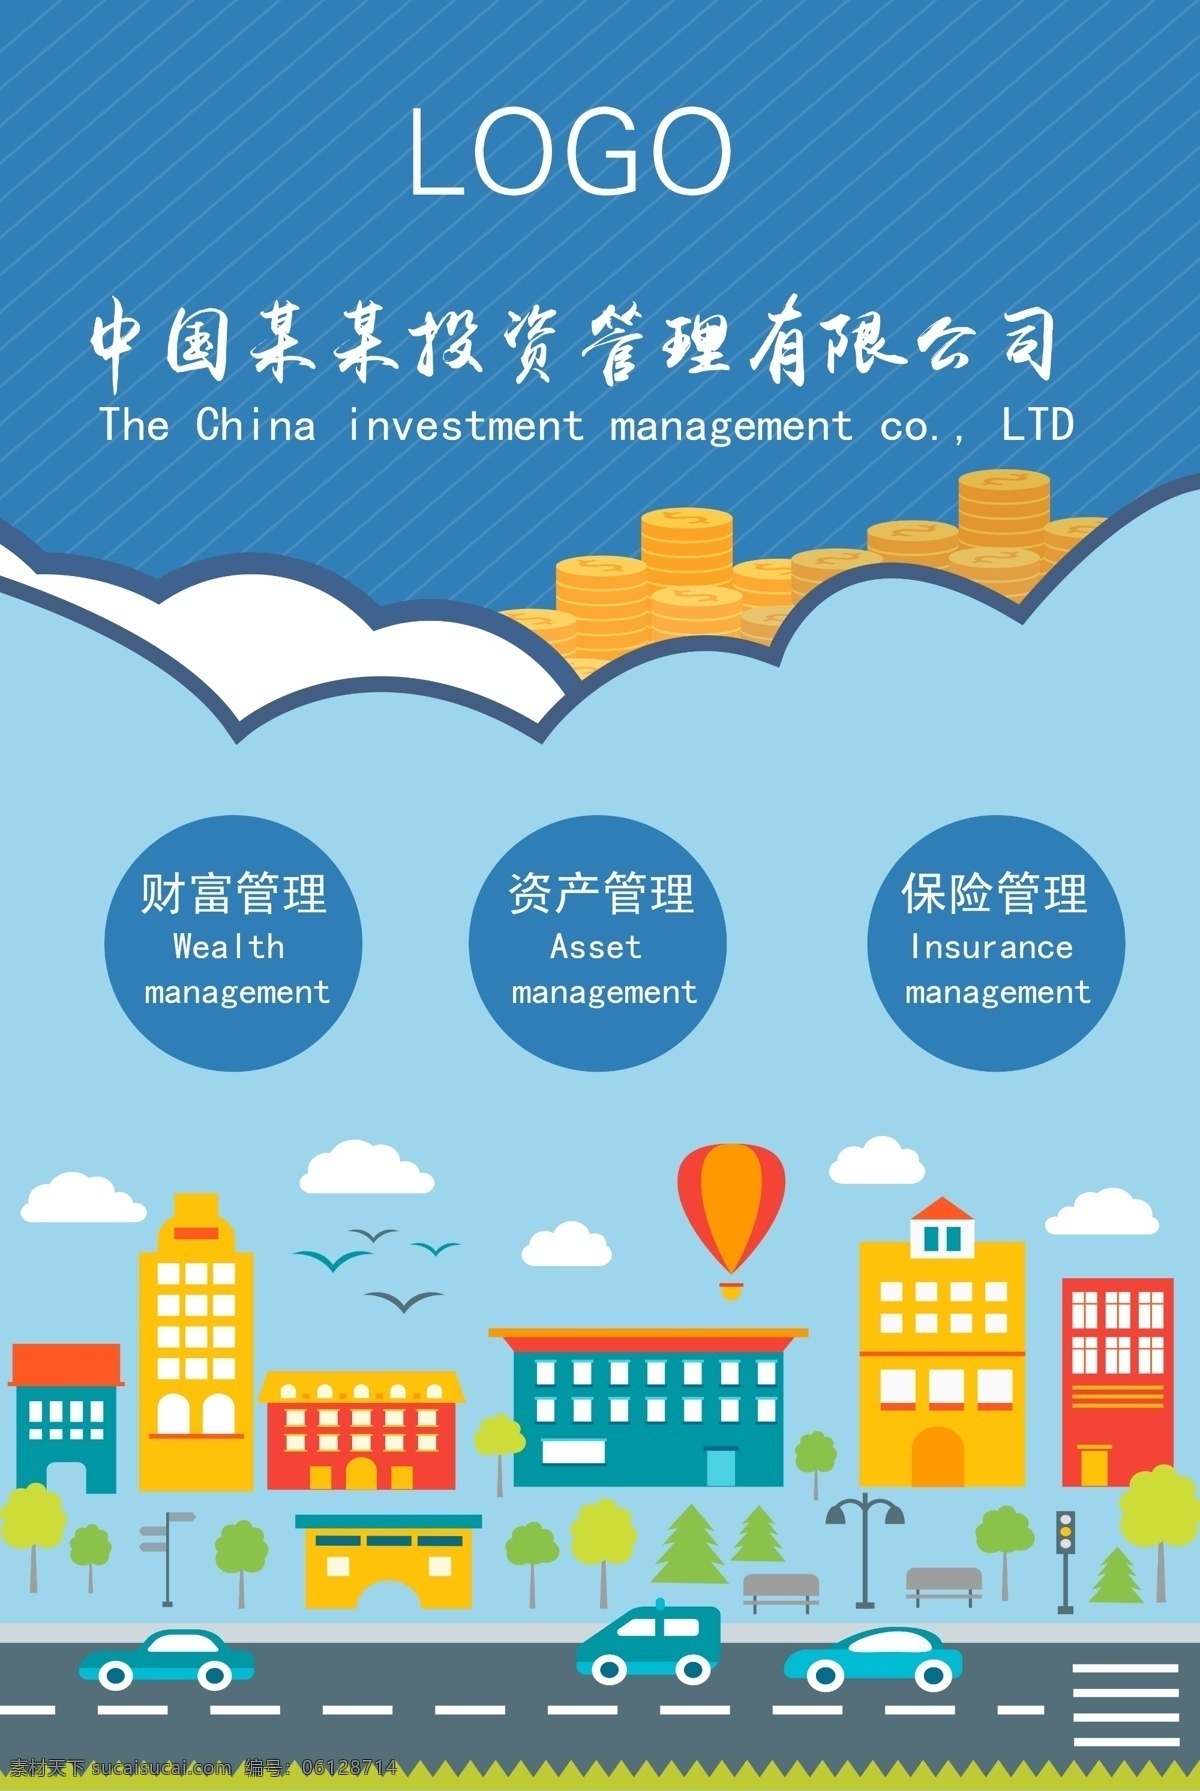 中国 某某 投资管理 有限公司 金融 投资 理财 公司形象宣传 海报 展板